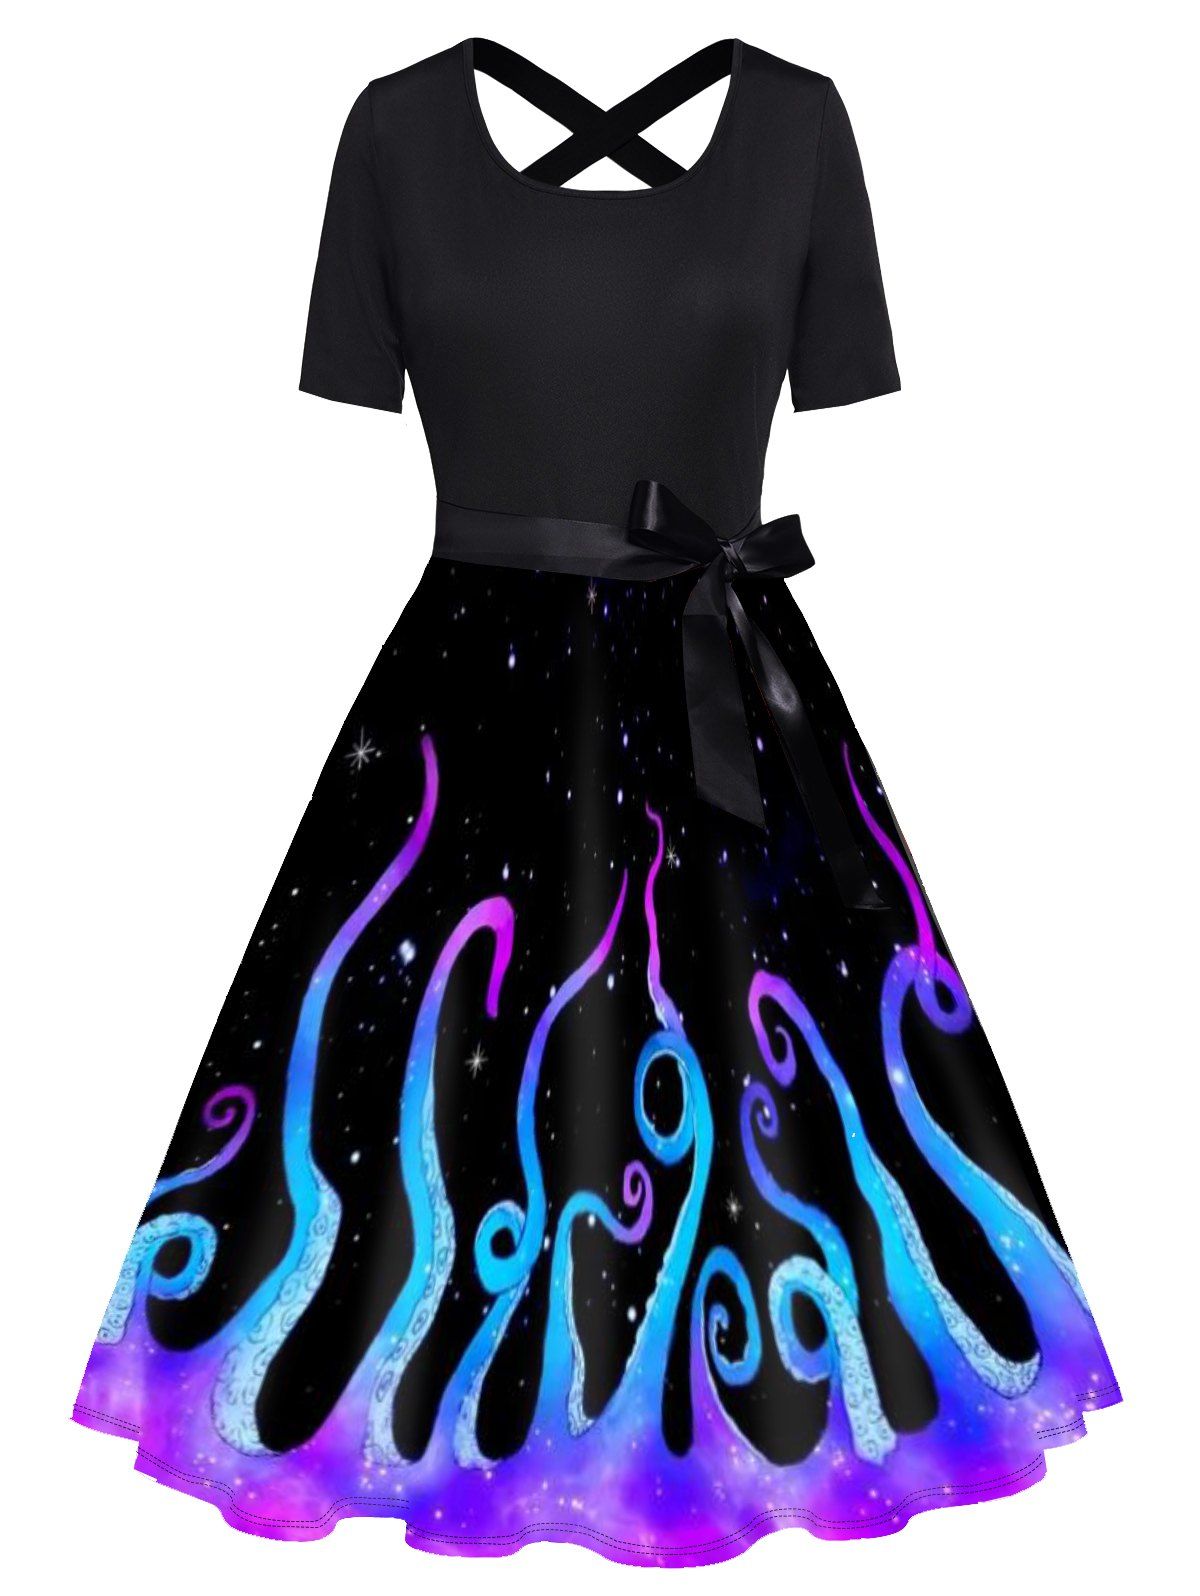 Galaxy Octopus Print Short Sleeve Dress Bowknot Cross High Waist A Line Dress - BLACK XL